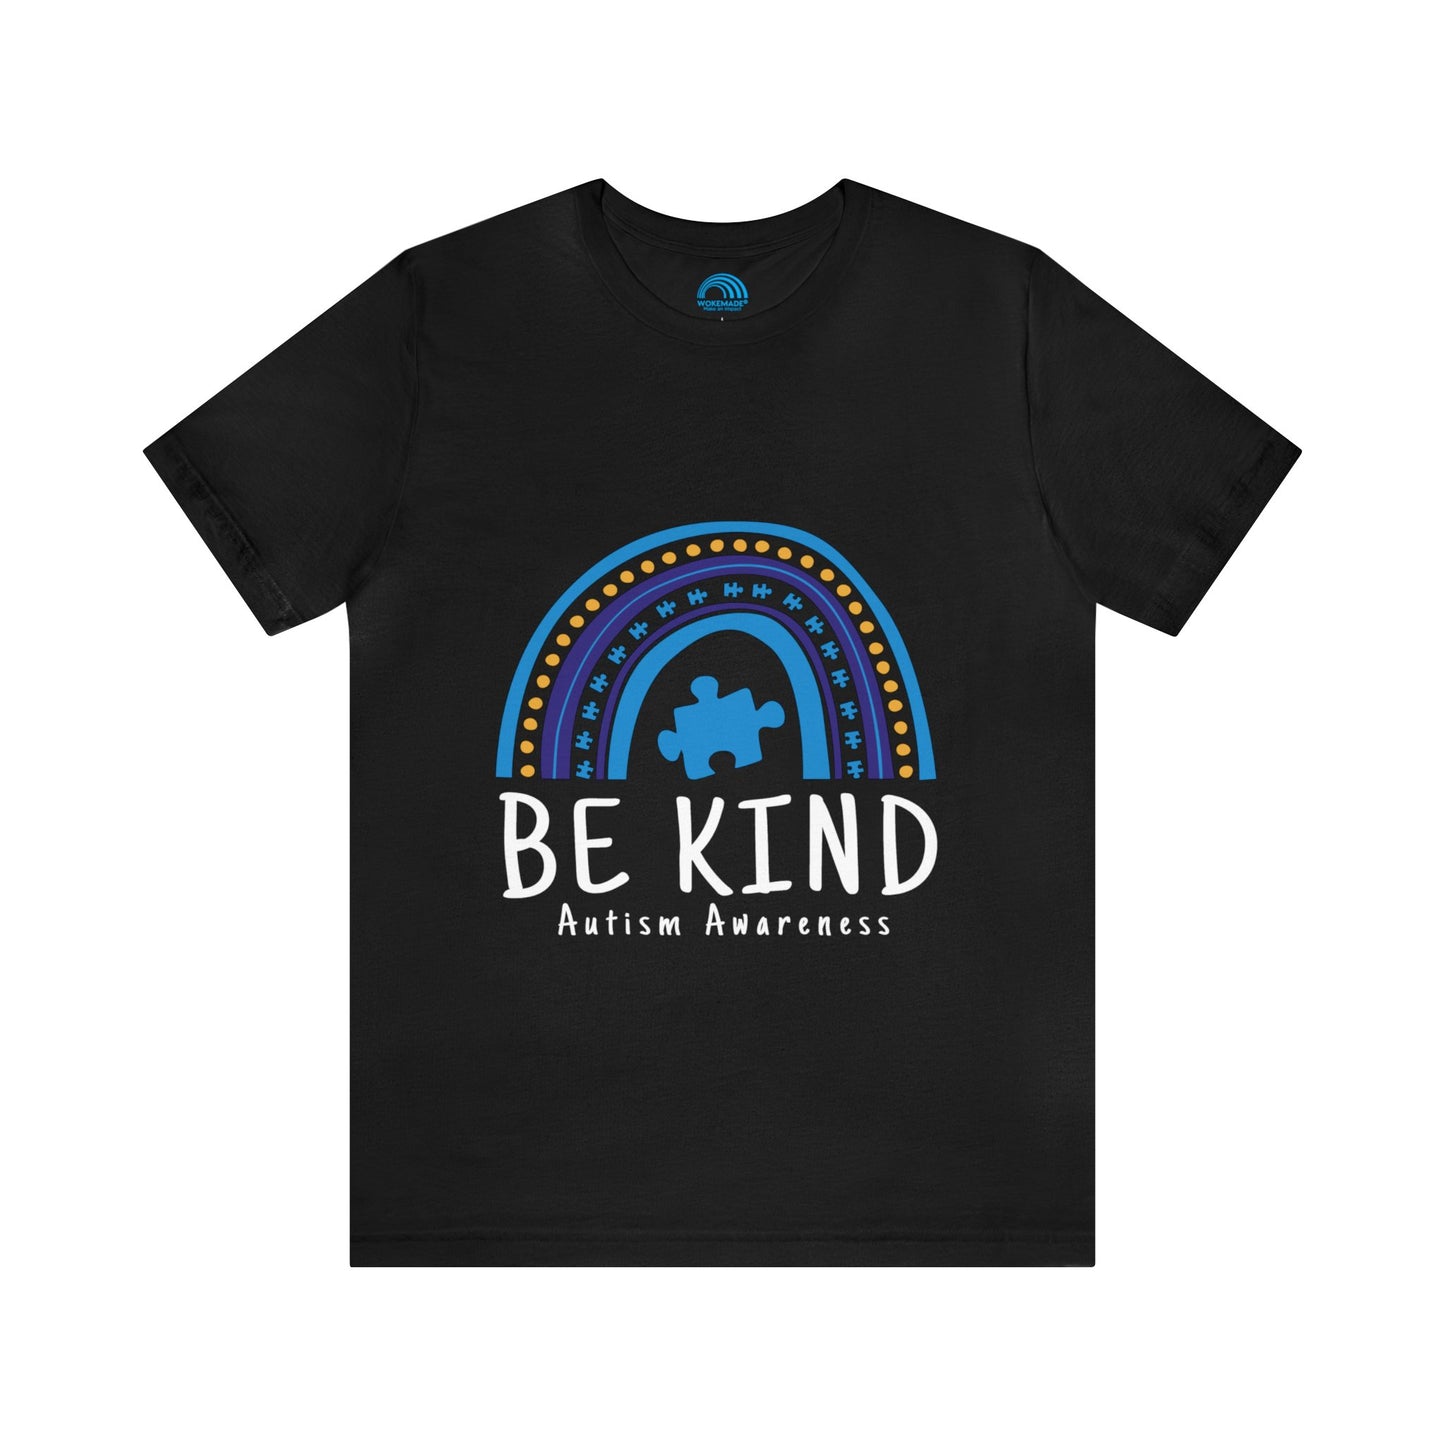 Be Kind - Autism Awareness